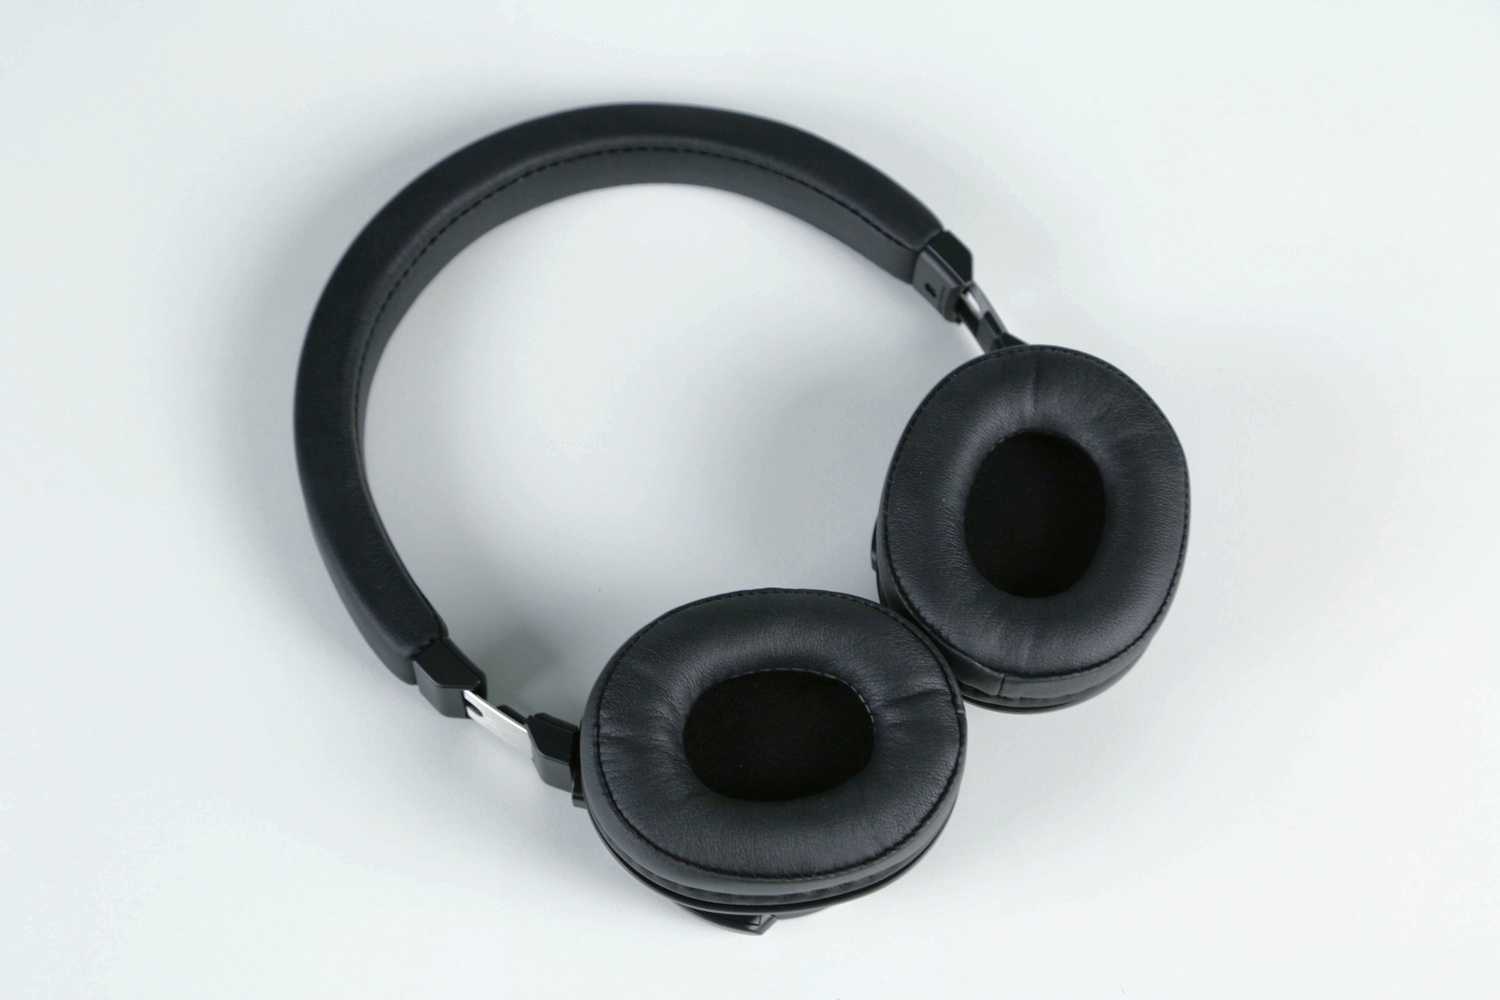 Audio-technica ath-cks55 купить по акционной цене , отзывы и обзоры.